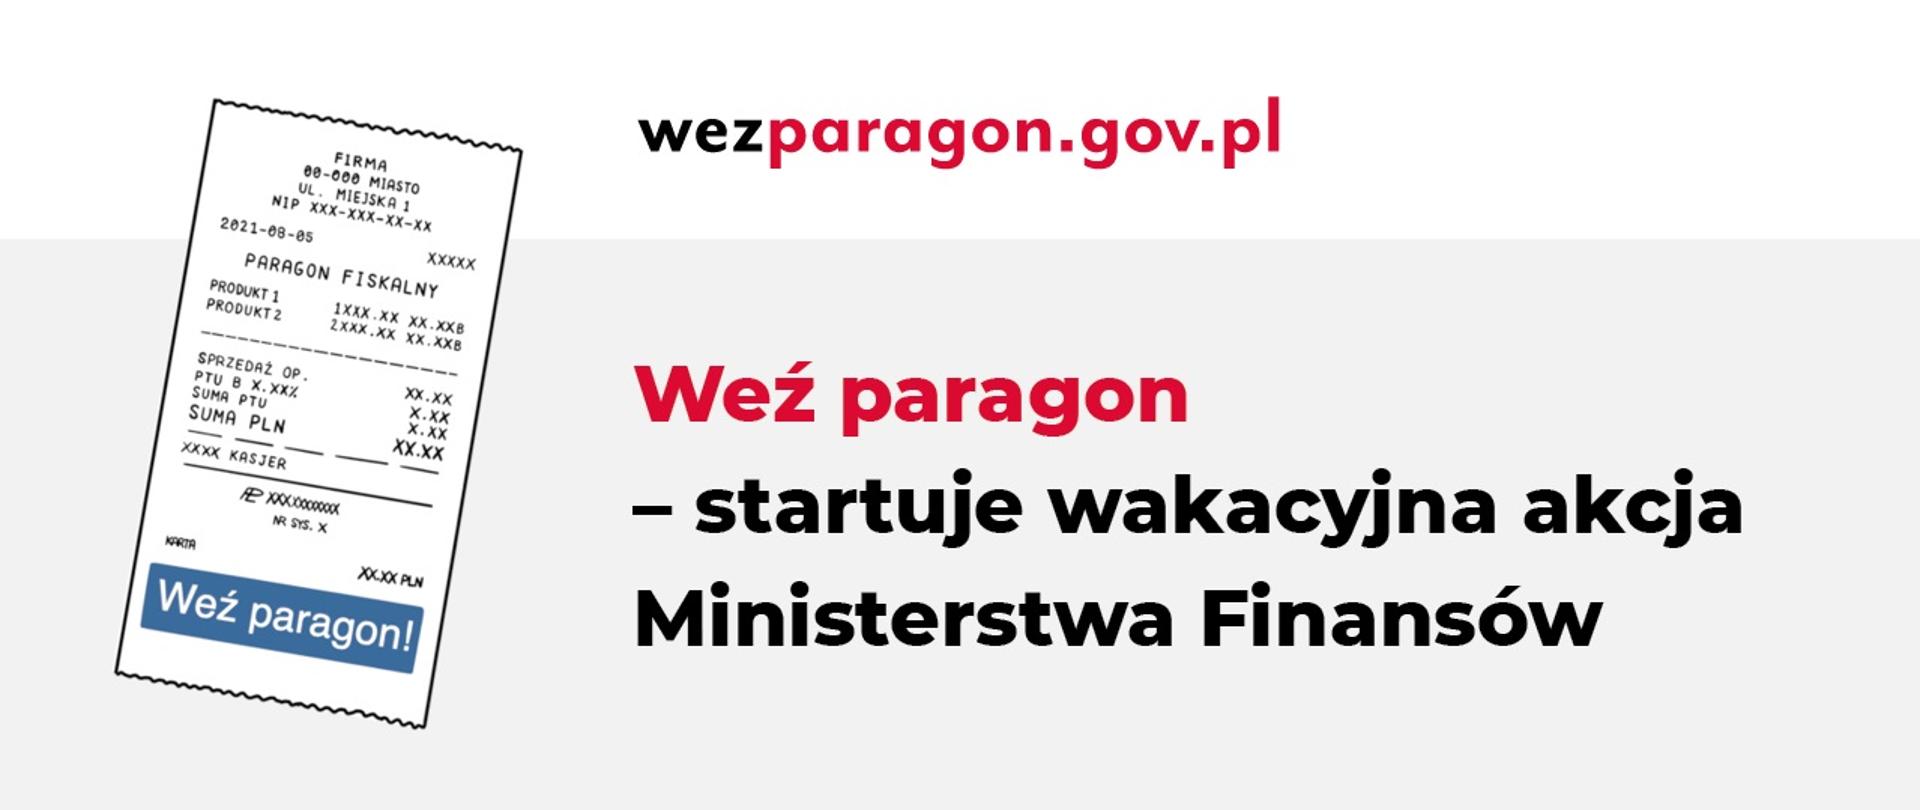 Zdjęcie paragonu fiskalnego, obok napis: weź paragon - startuje wakacyjna akcja Ministerstwa Finansów, wezparagon.gov.pl